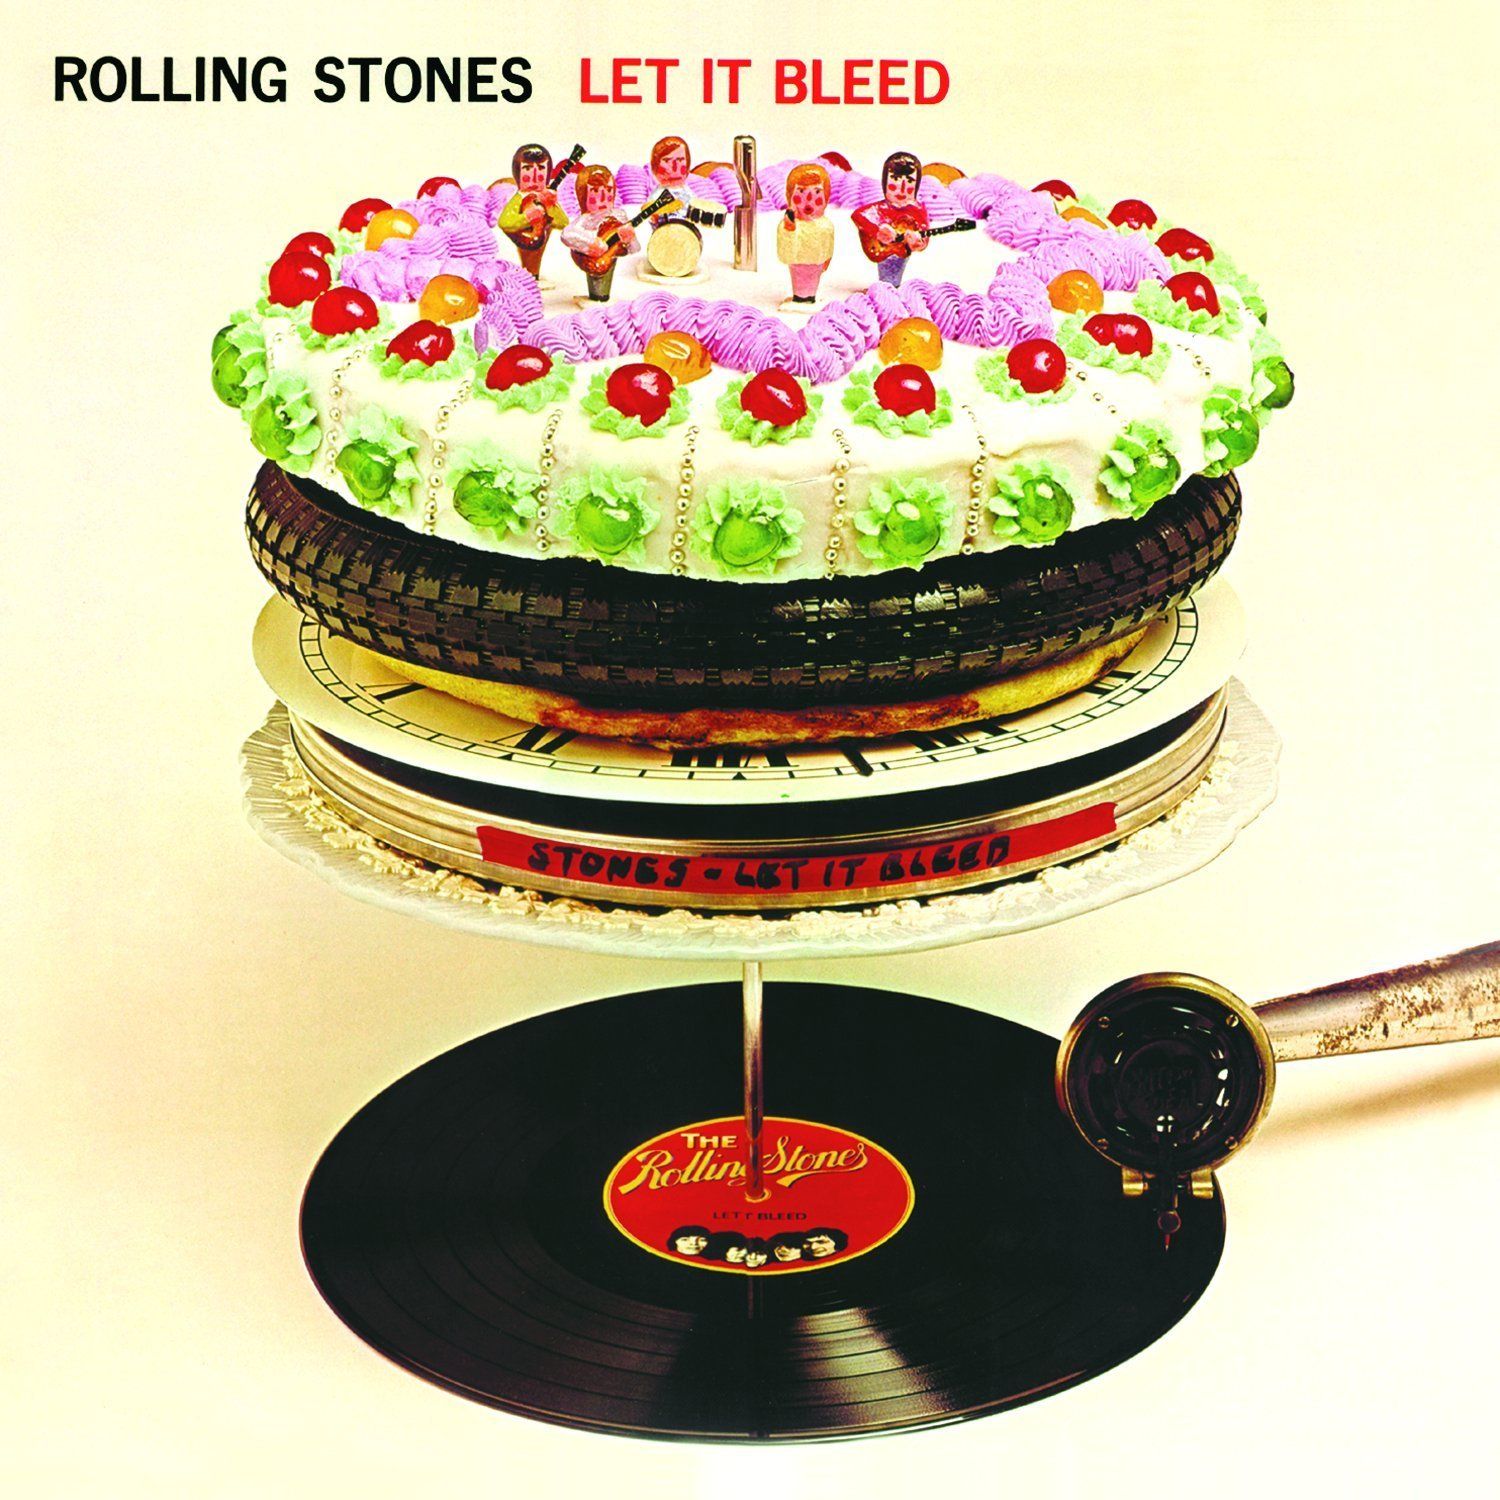 Portada de Let it Bleed de los Rolling Stones